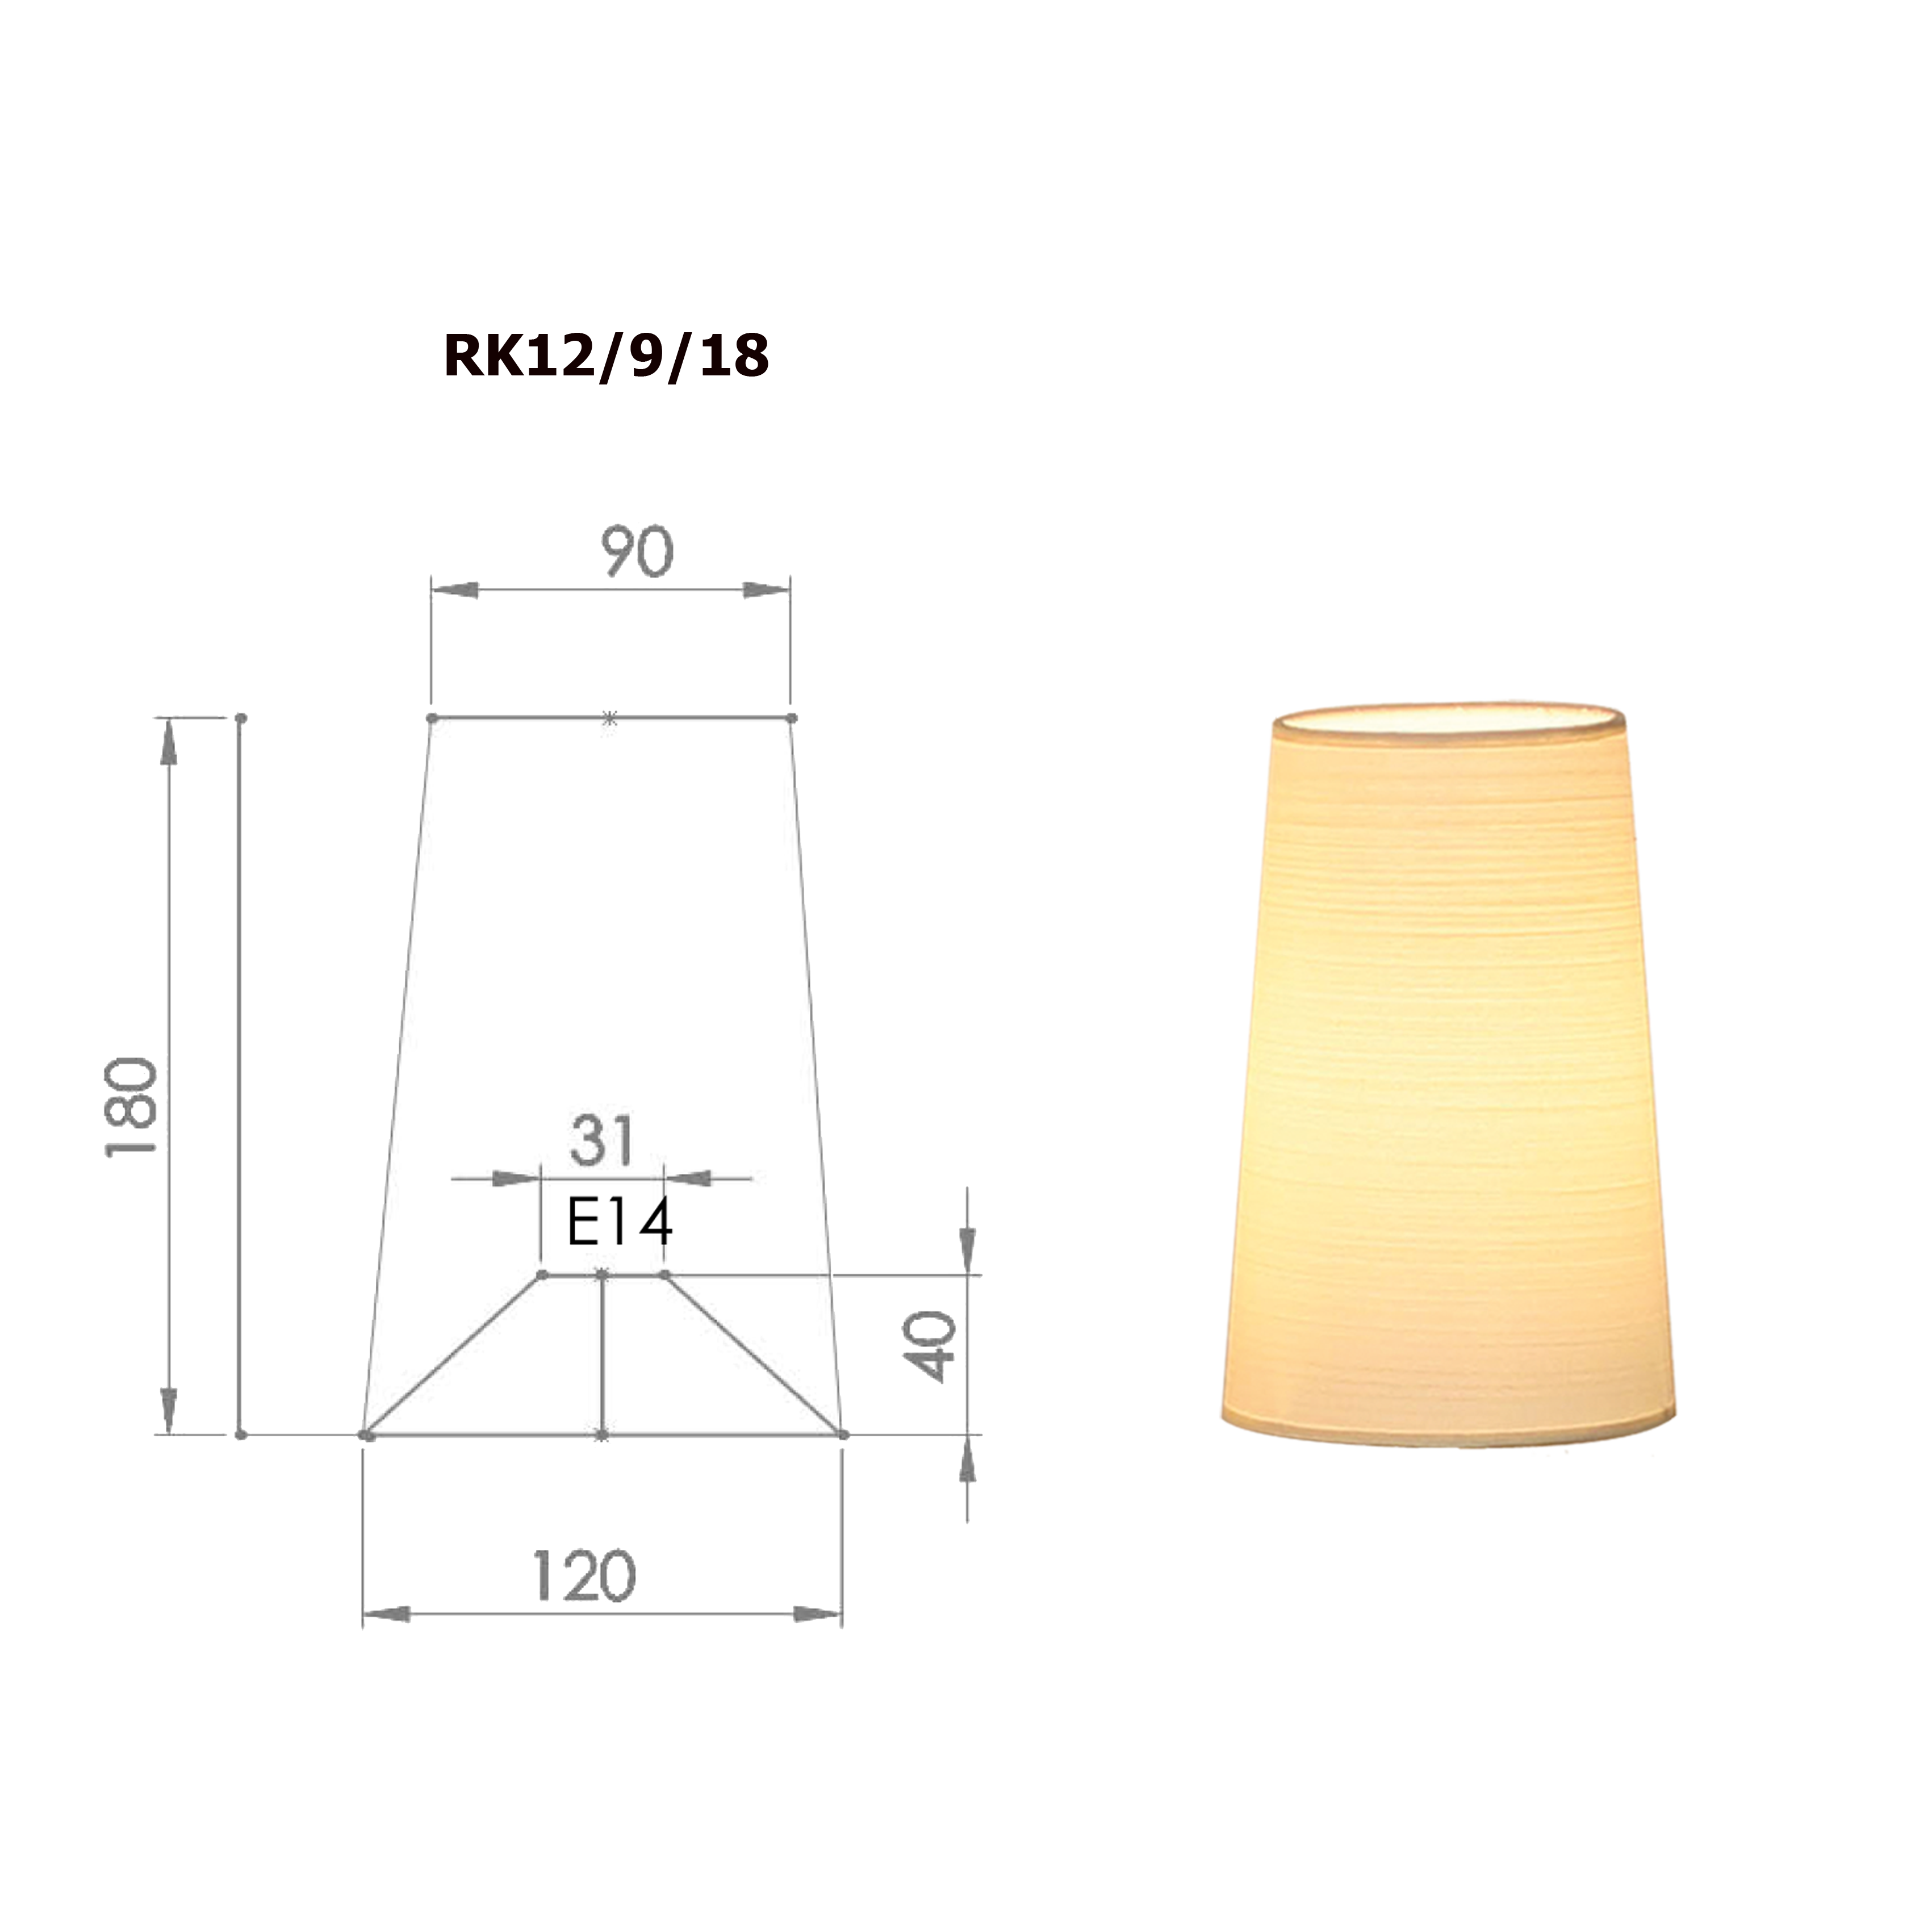 Lampenschirm konisch D=12cm Tischleuchte Wandlampe E14 Strichlack und Farbe nach Wahl